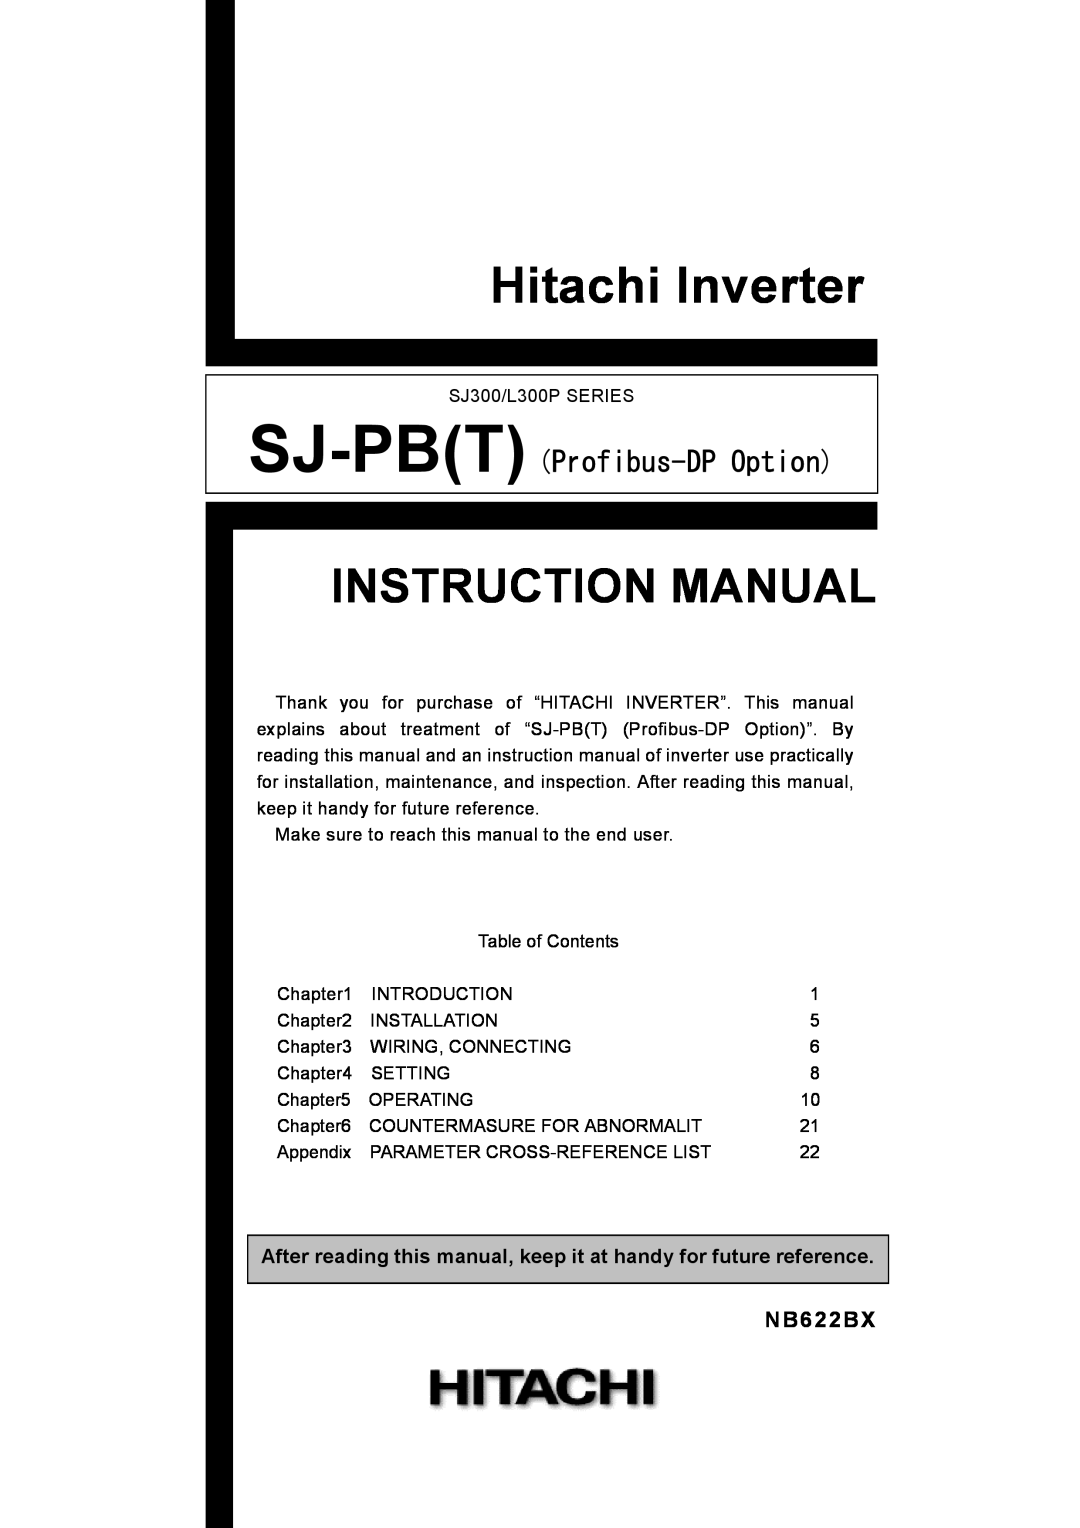 Hitachi SJ-PB(T) instruction manual NB622BX, Hitachi Inverter, Instruction Manual, SJ-PBT Profibus-DPOption 